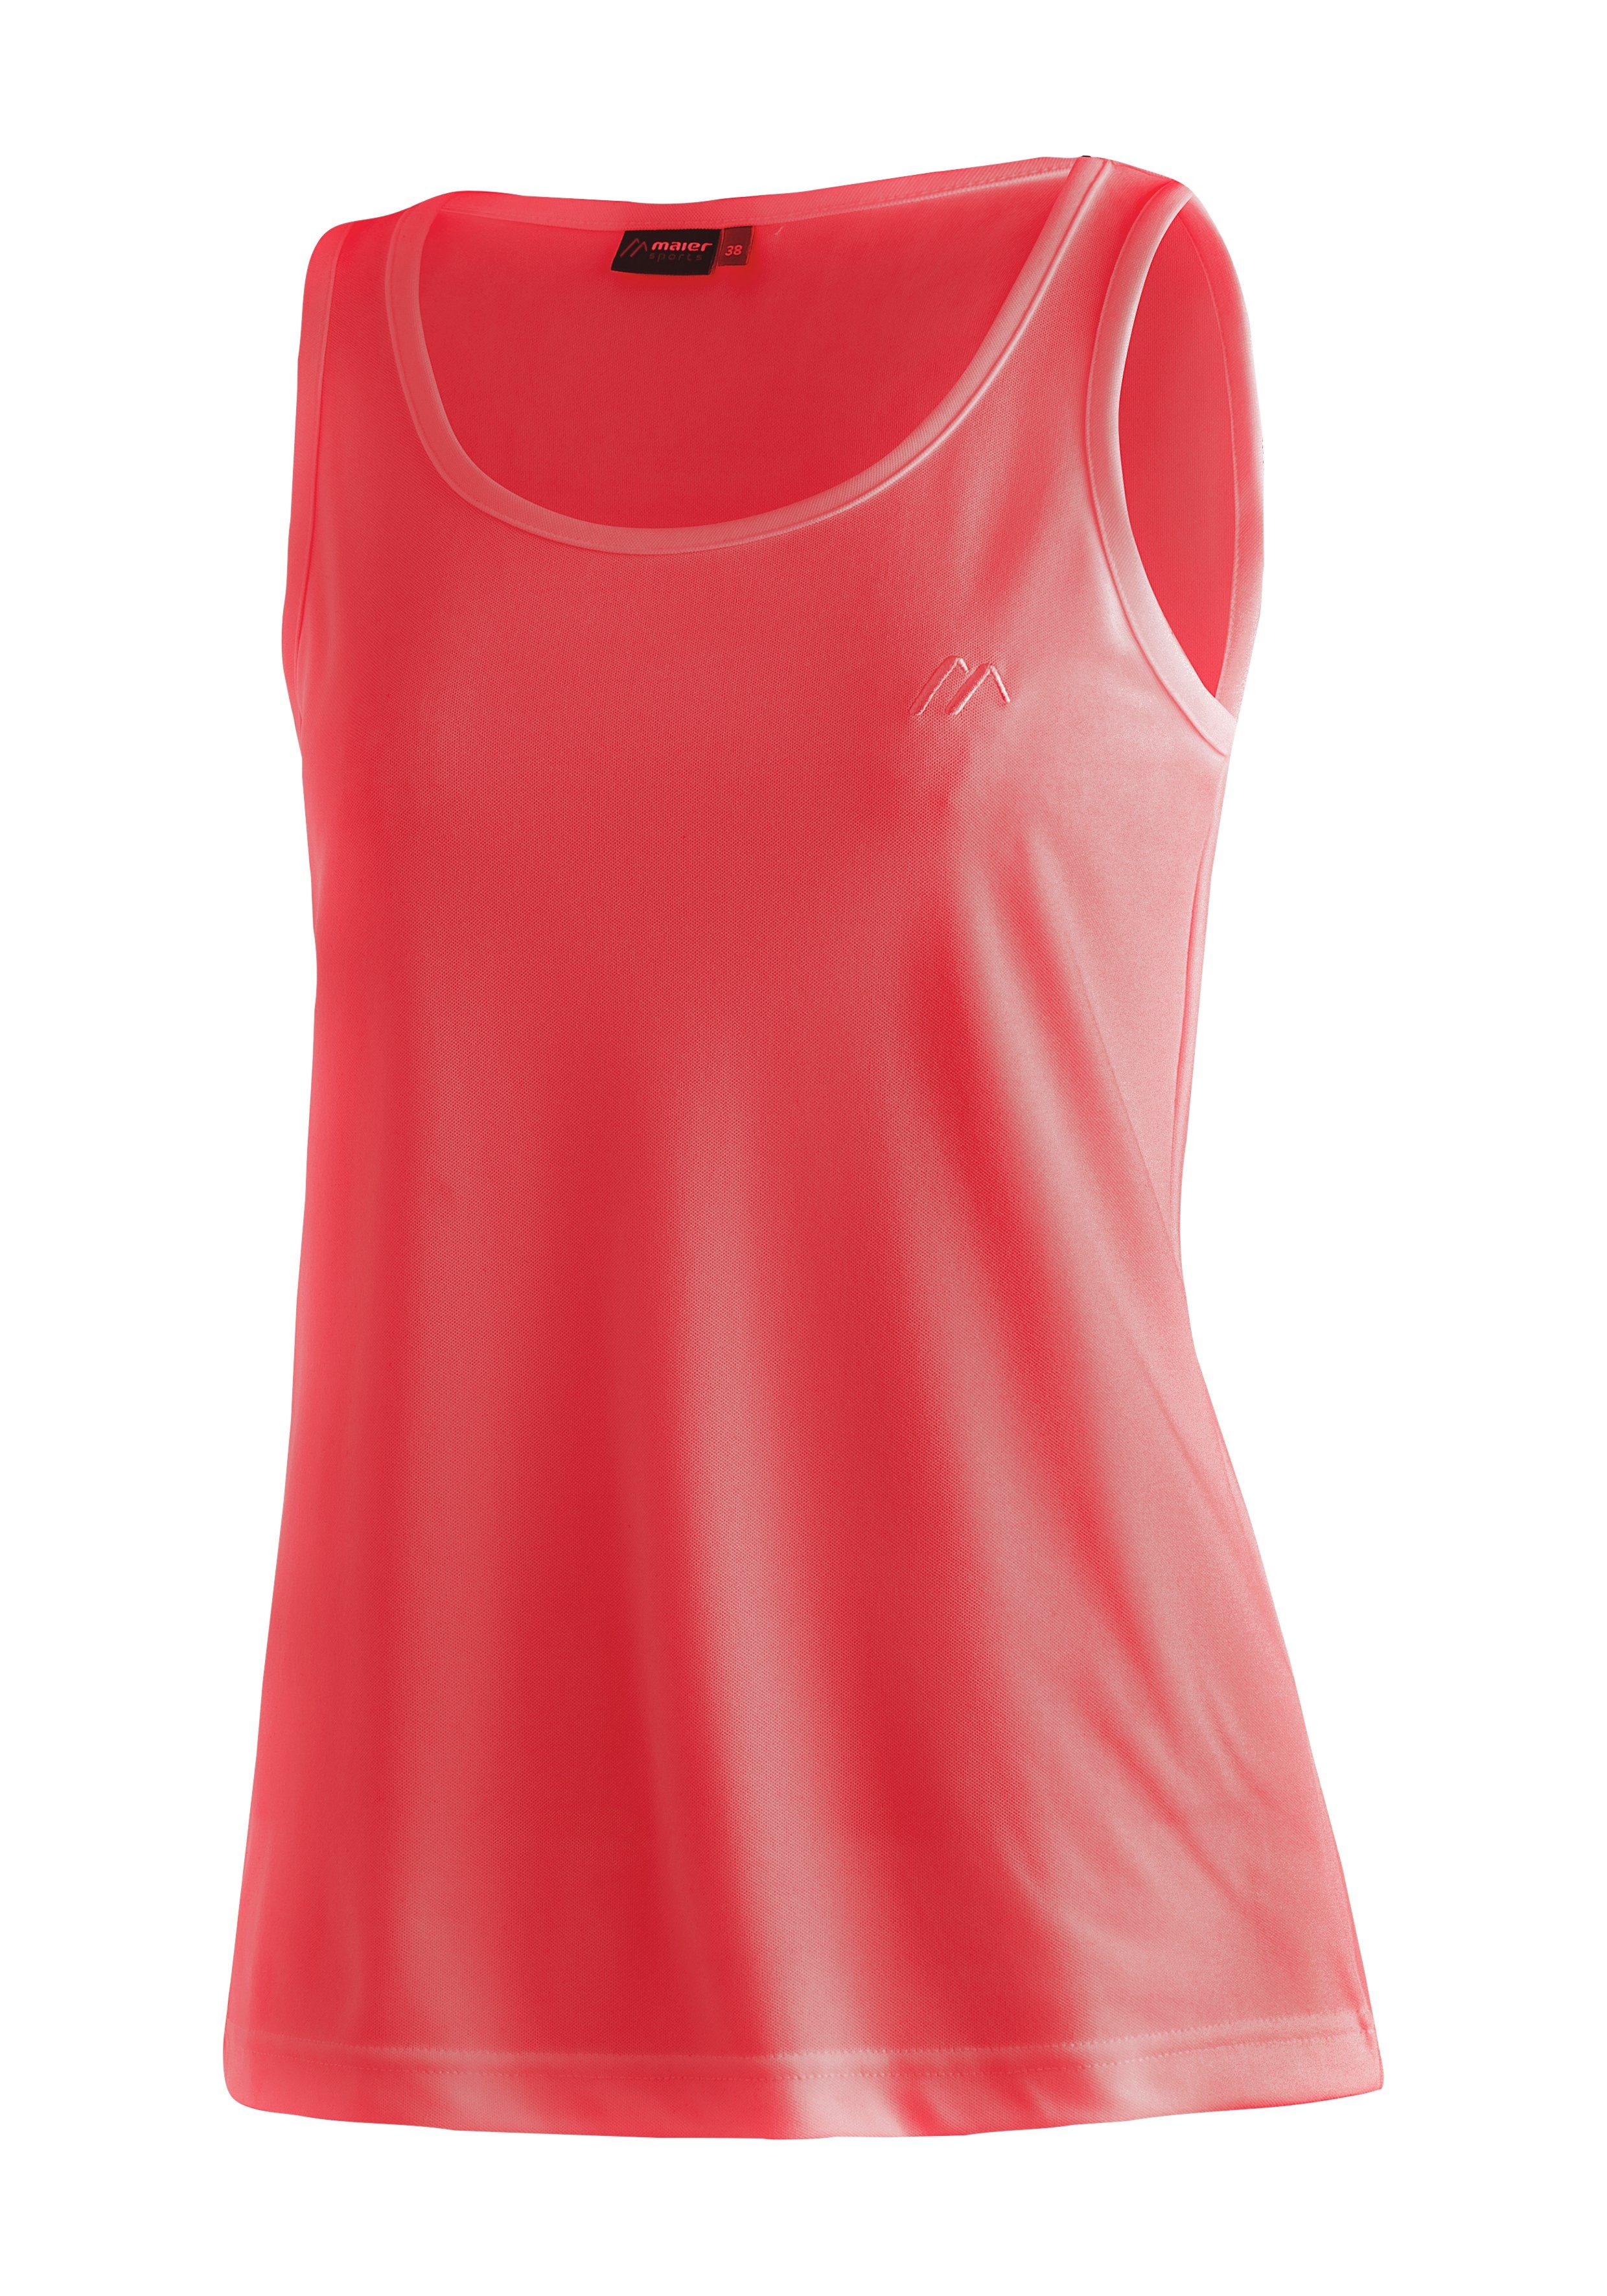 maier sports functioneel shirt petra damestanktop voor sport en outdooractiviteiten, mouwloos shirt rood